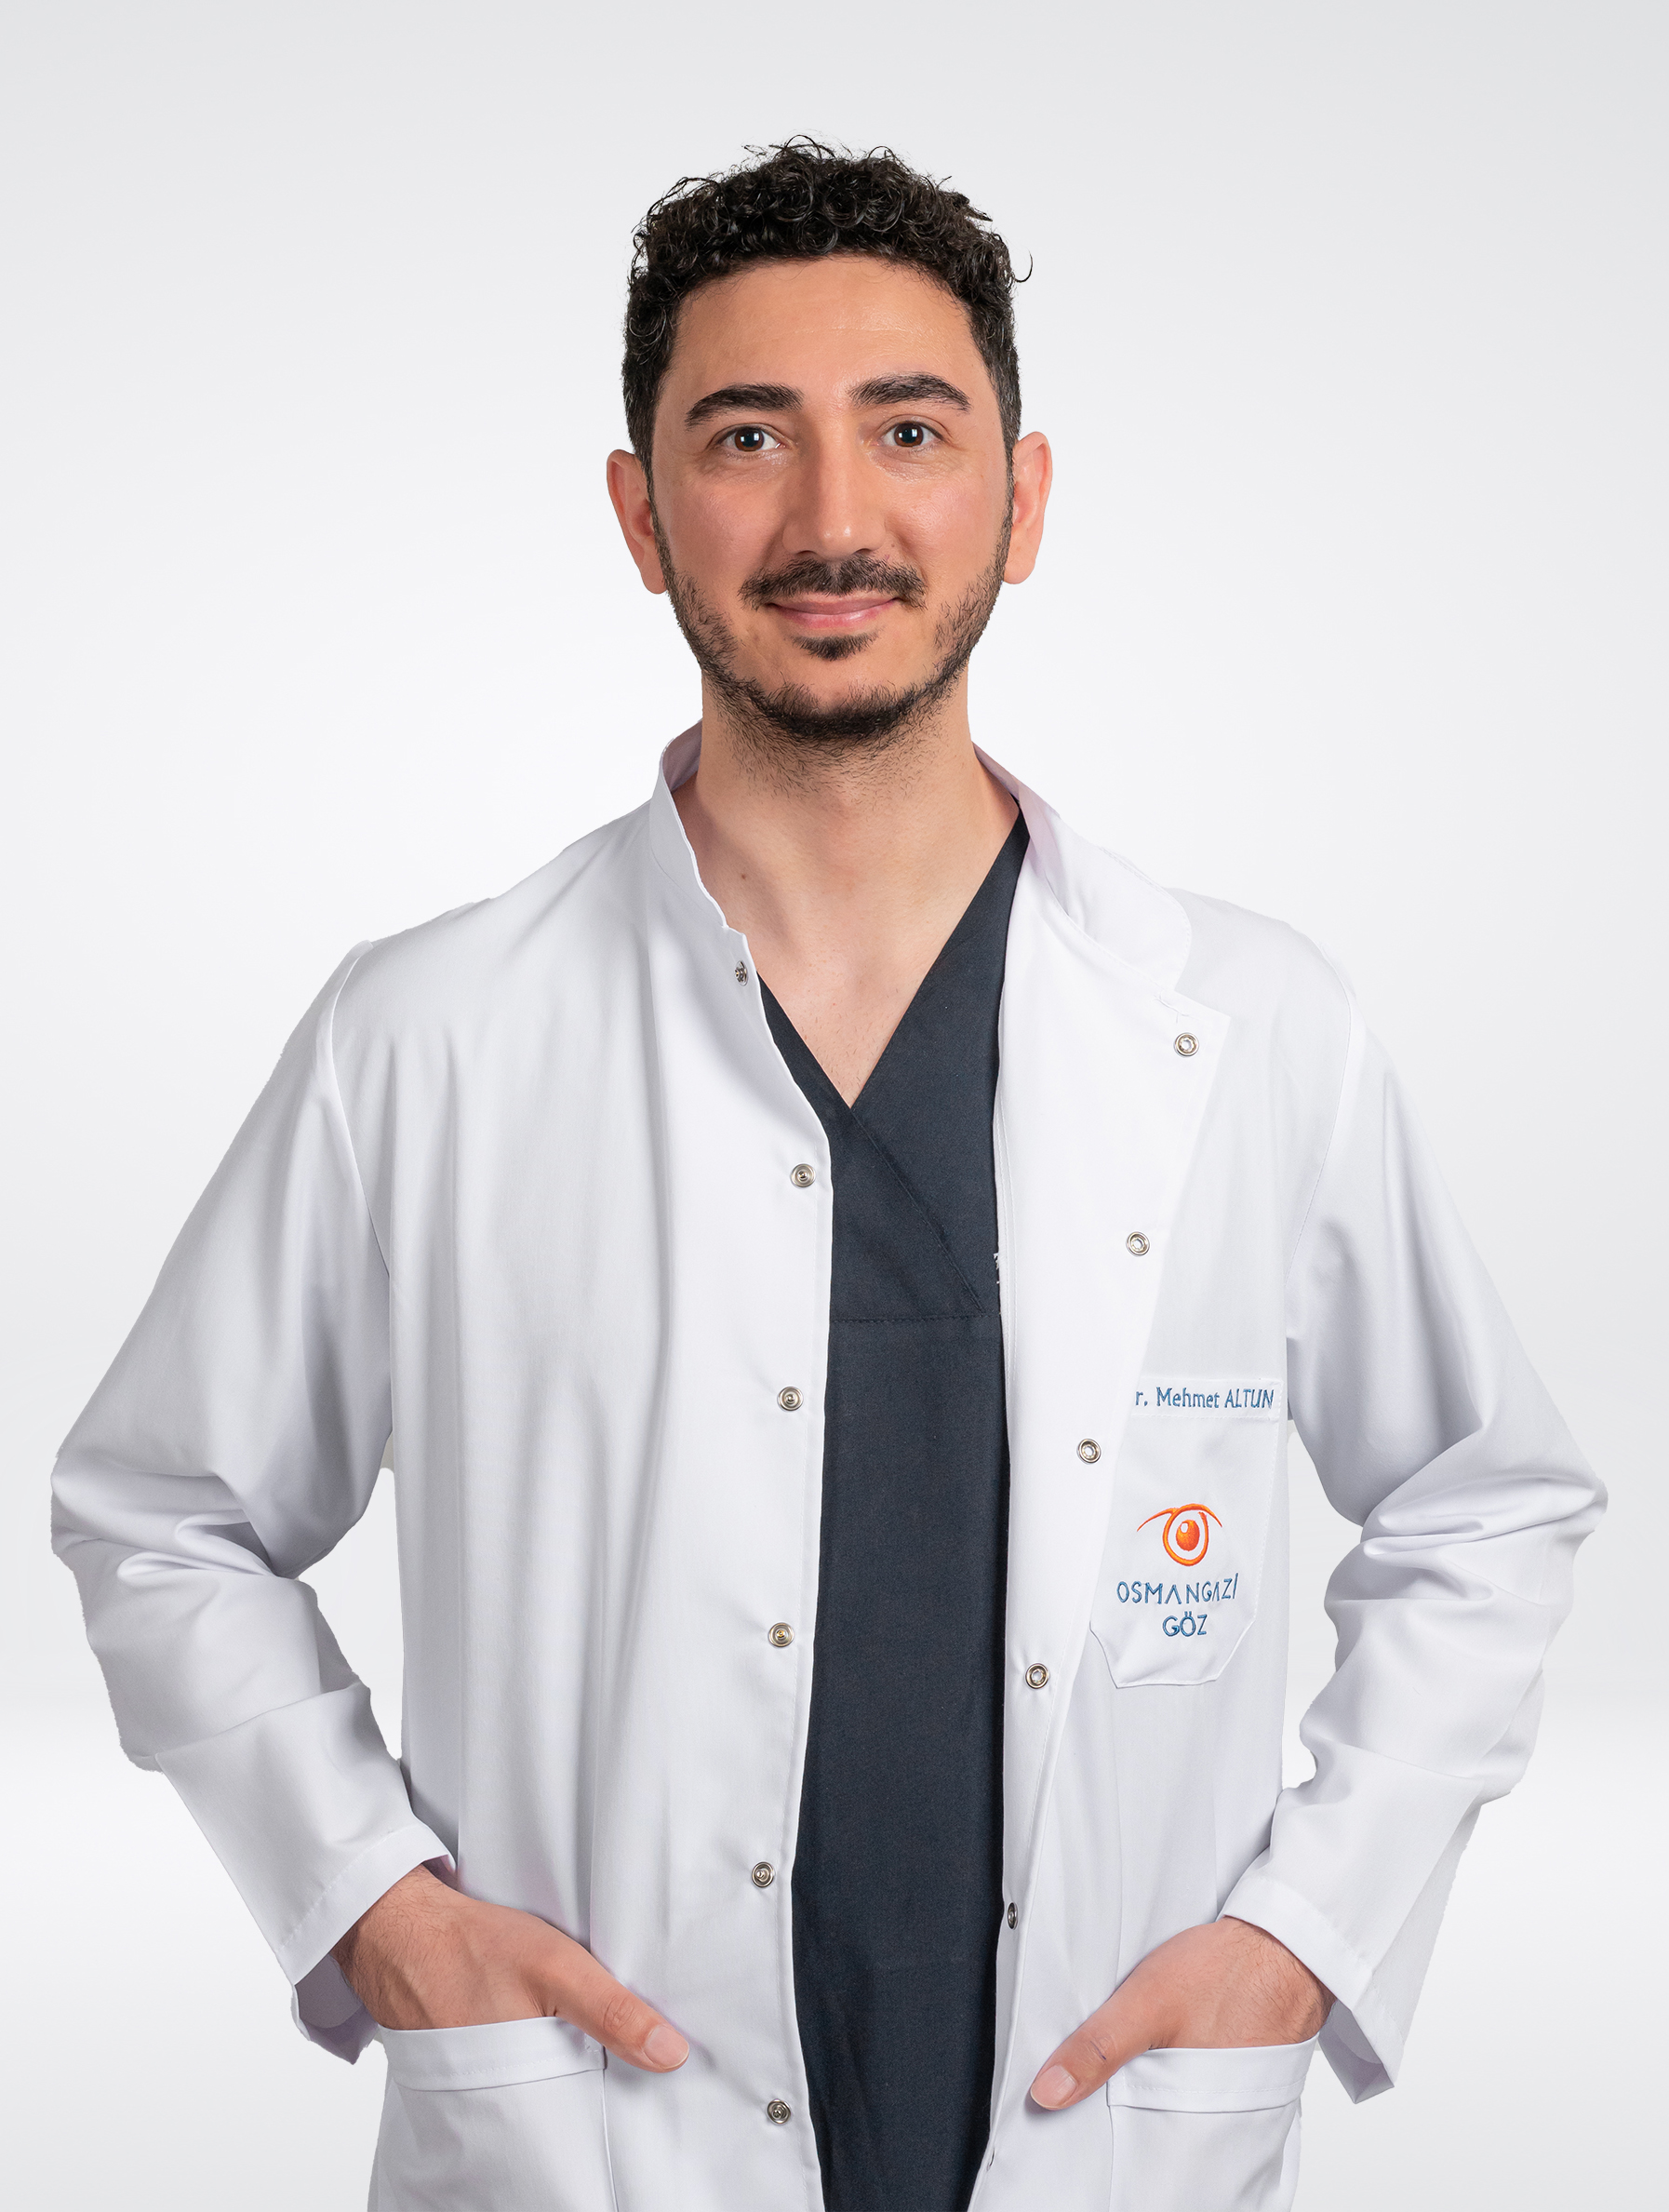 Opr. Dr. Mehmet ALTUN